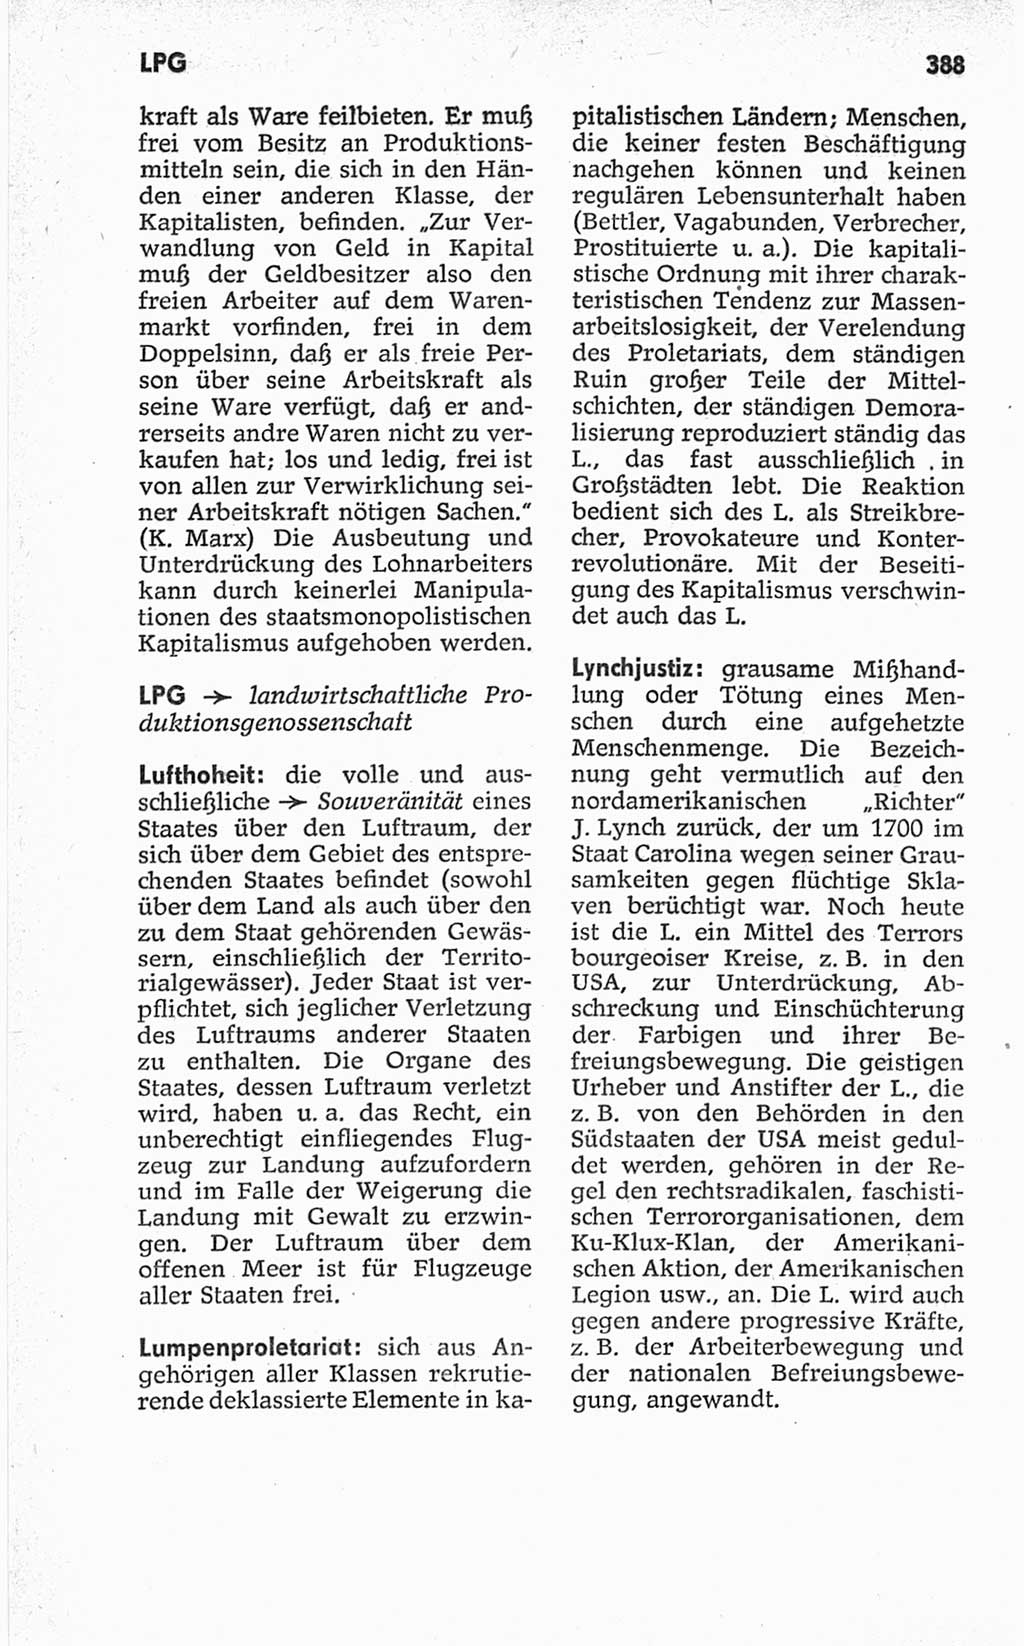 Kleines politisches Wörterbuch [Deutsche Demokratische Republik (DDR)] 1967, Seite 388 (Kl. pol. Wb. DDR 1967, S. 388)